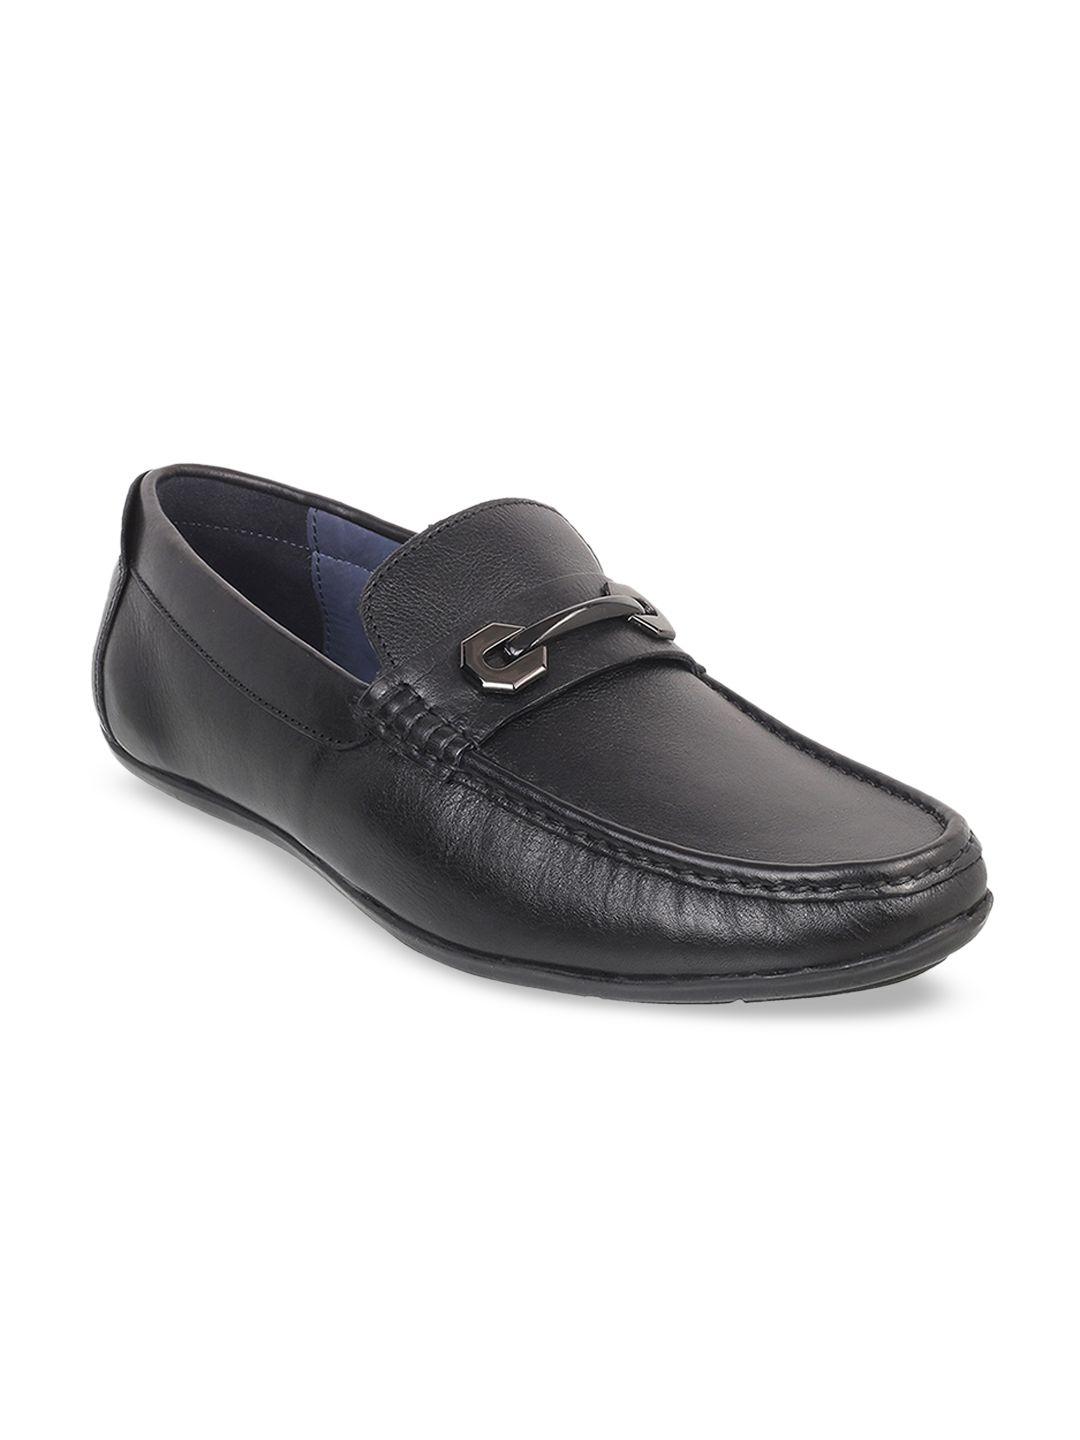 mochi men black solid leather formal horsebit loafers